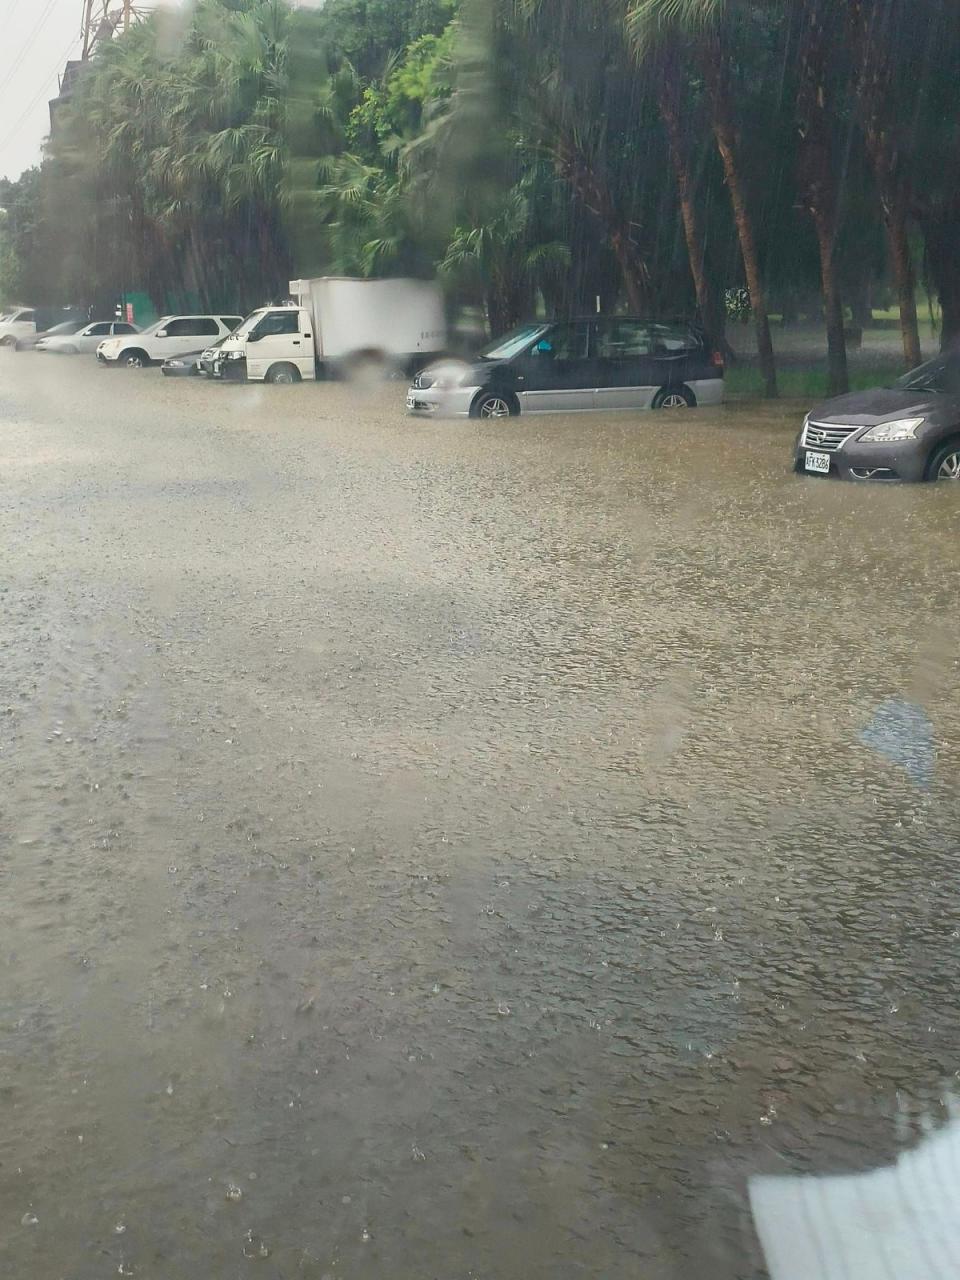 綠寶石環河路停車場 J 區淹水。取自臉書我是永和人